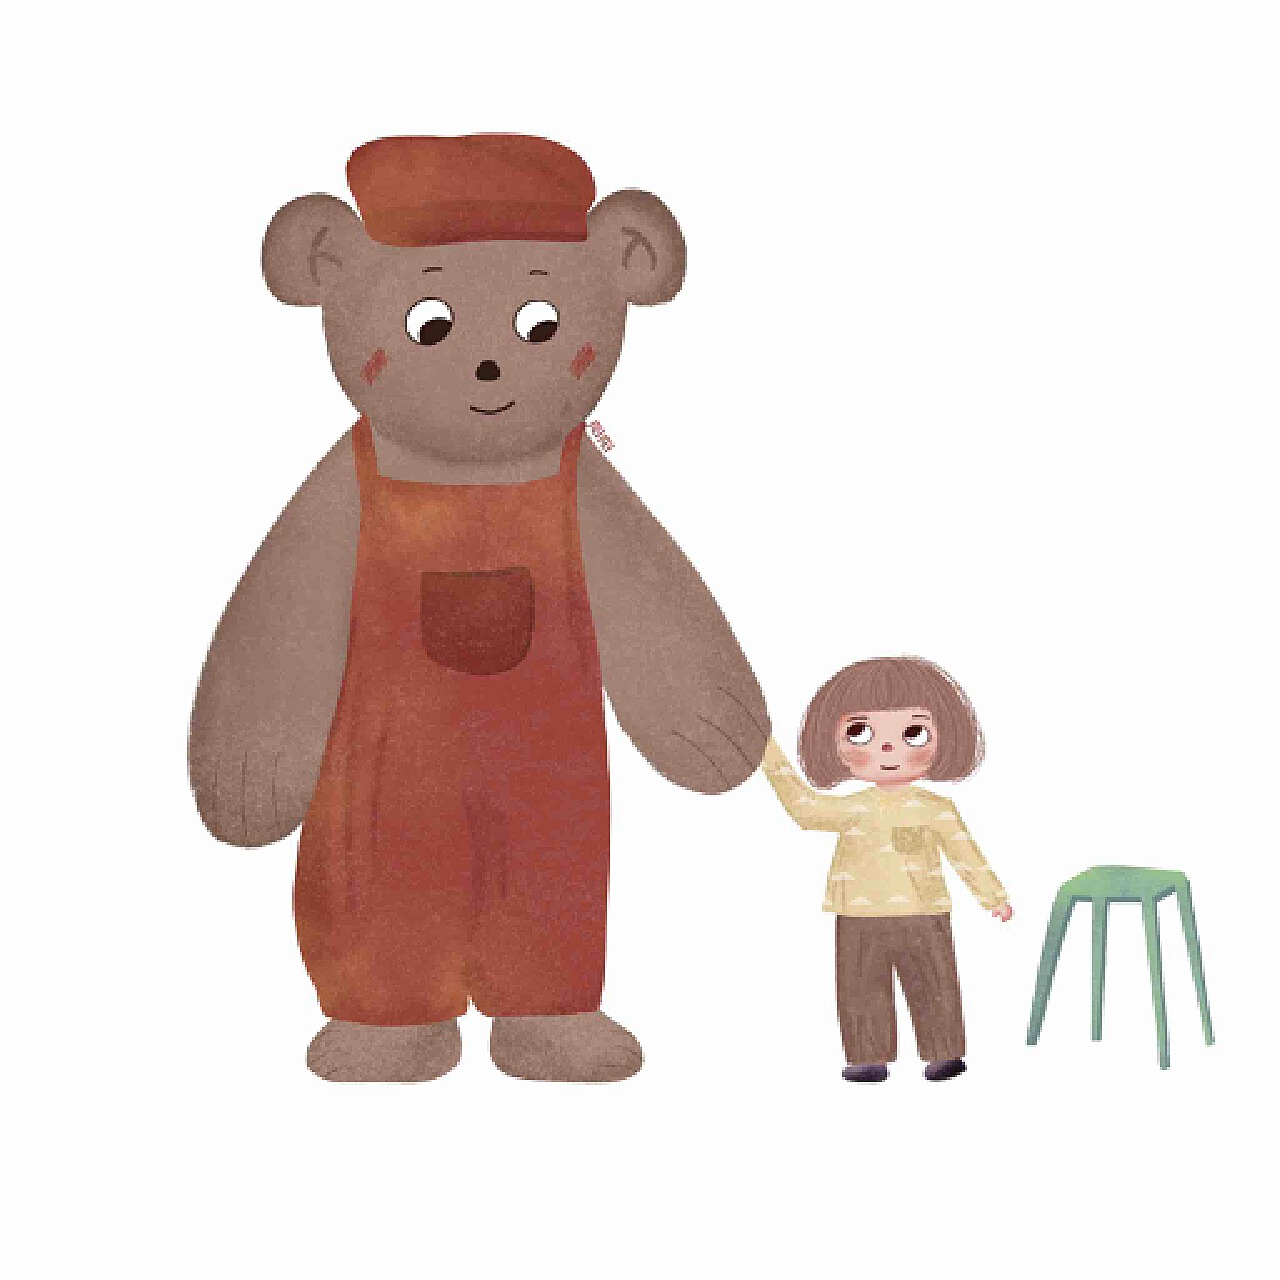 原创系列插画《温暖的大熊与小女孩》完结